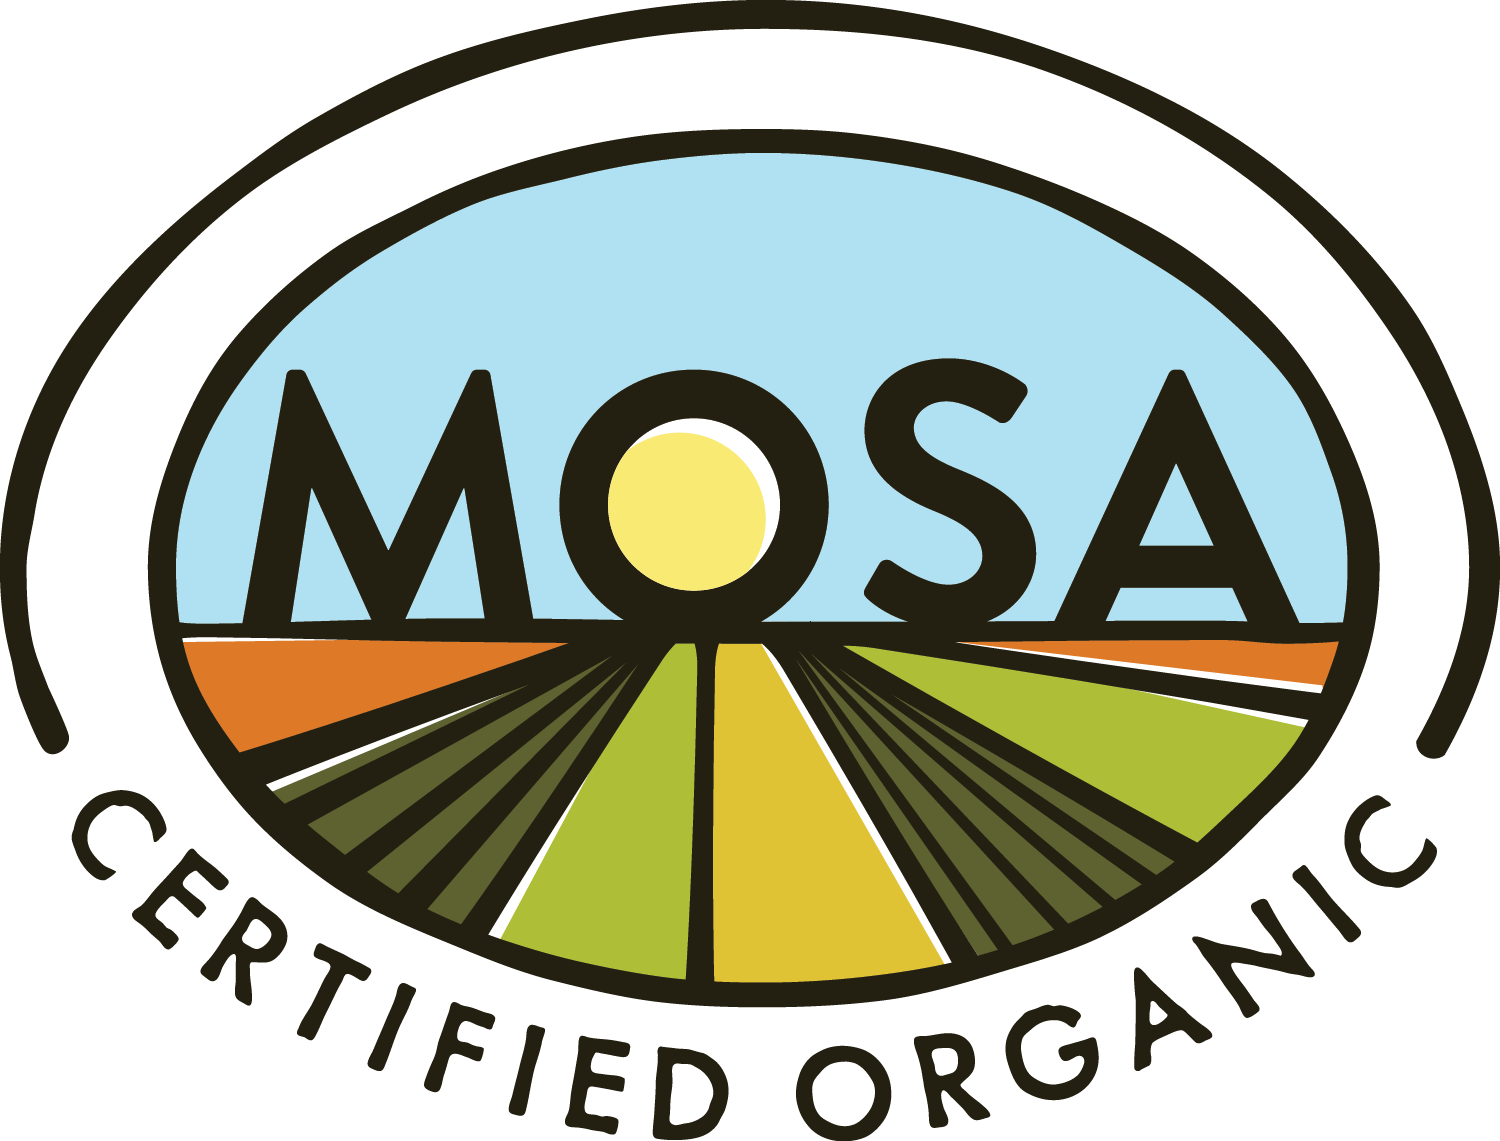 MOSA_CertOrg_Logo_CMYK